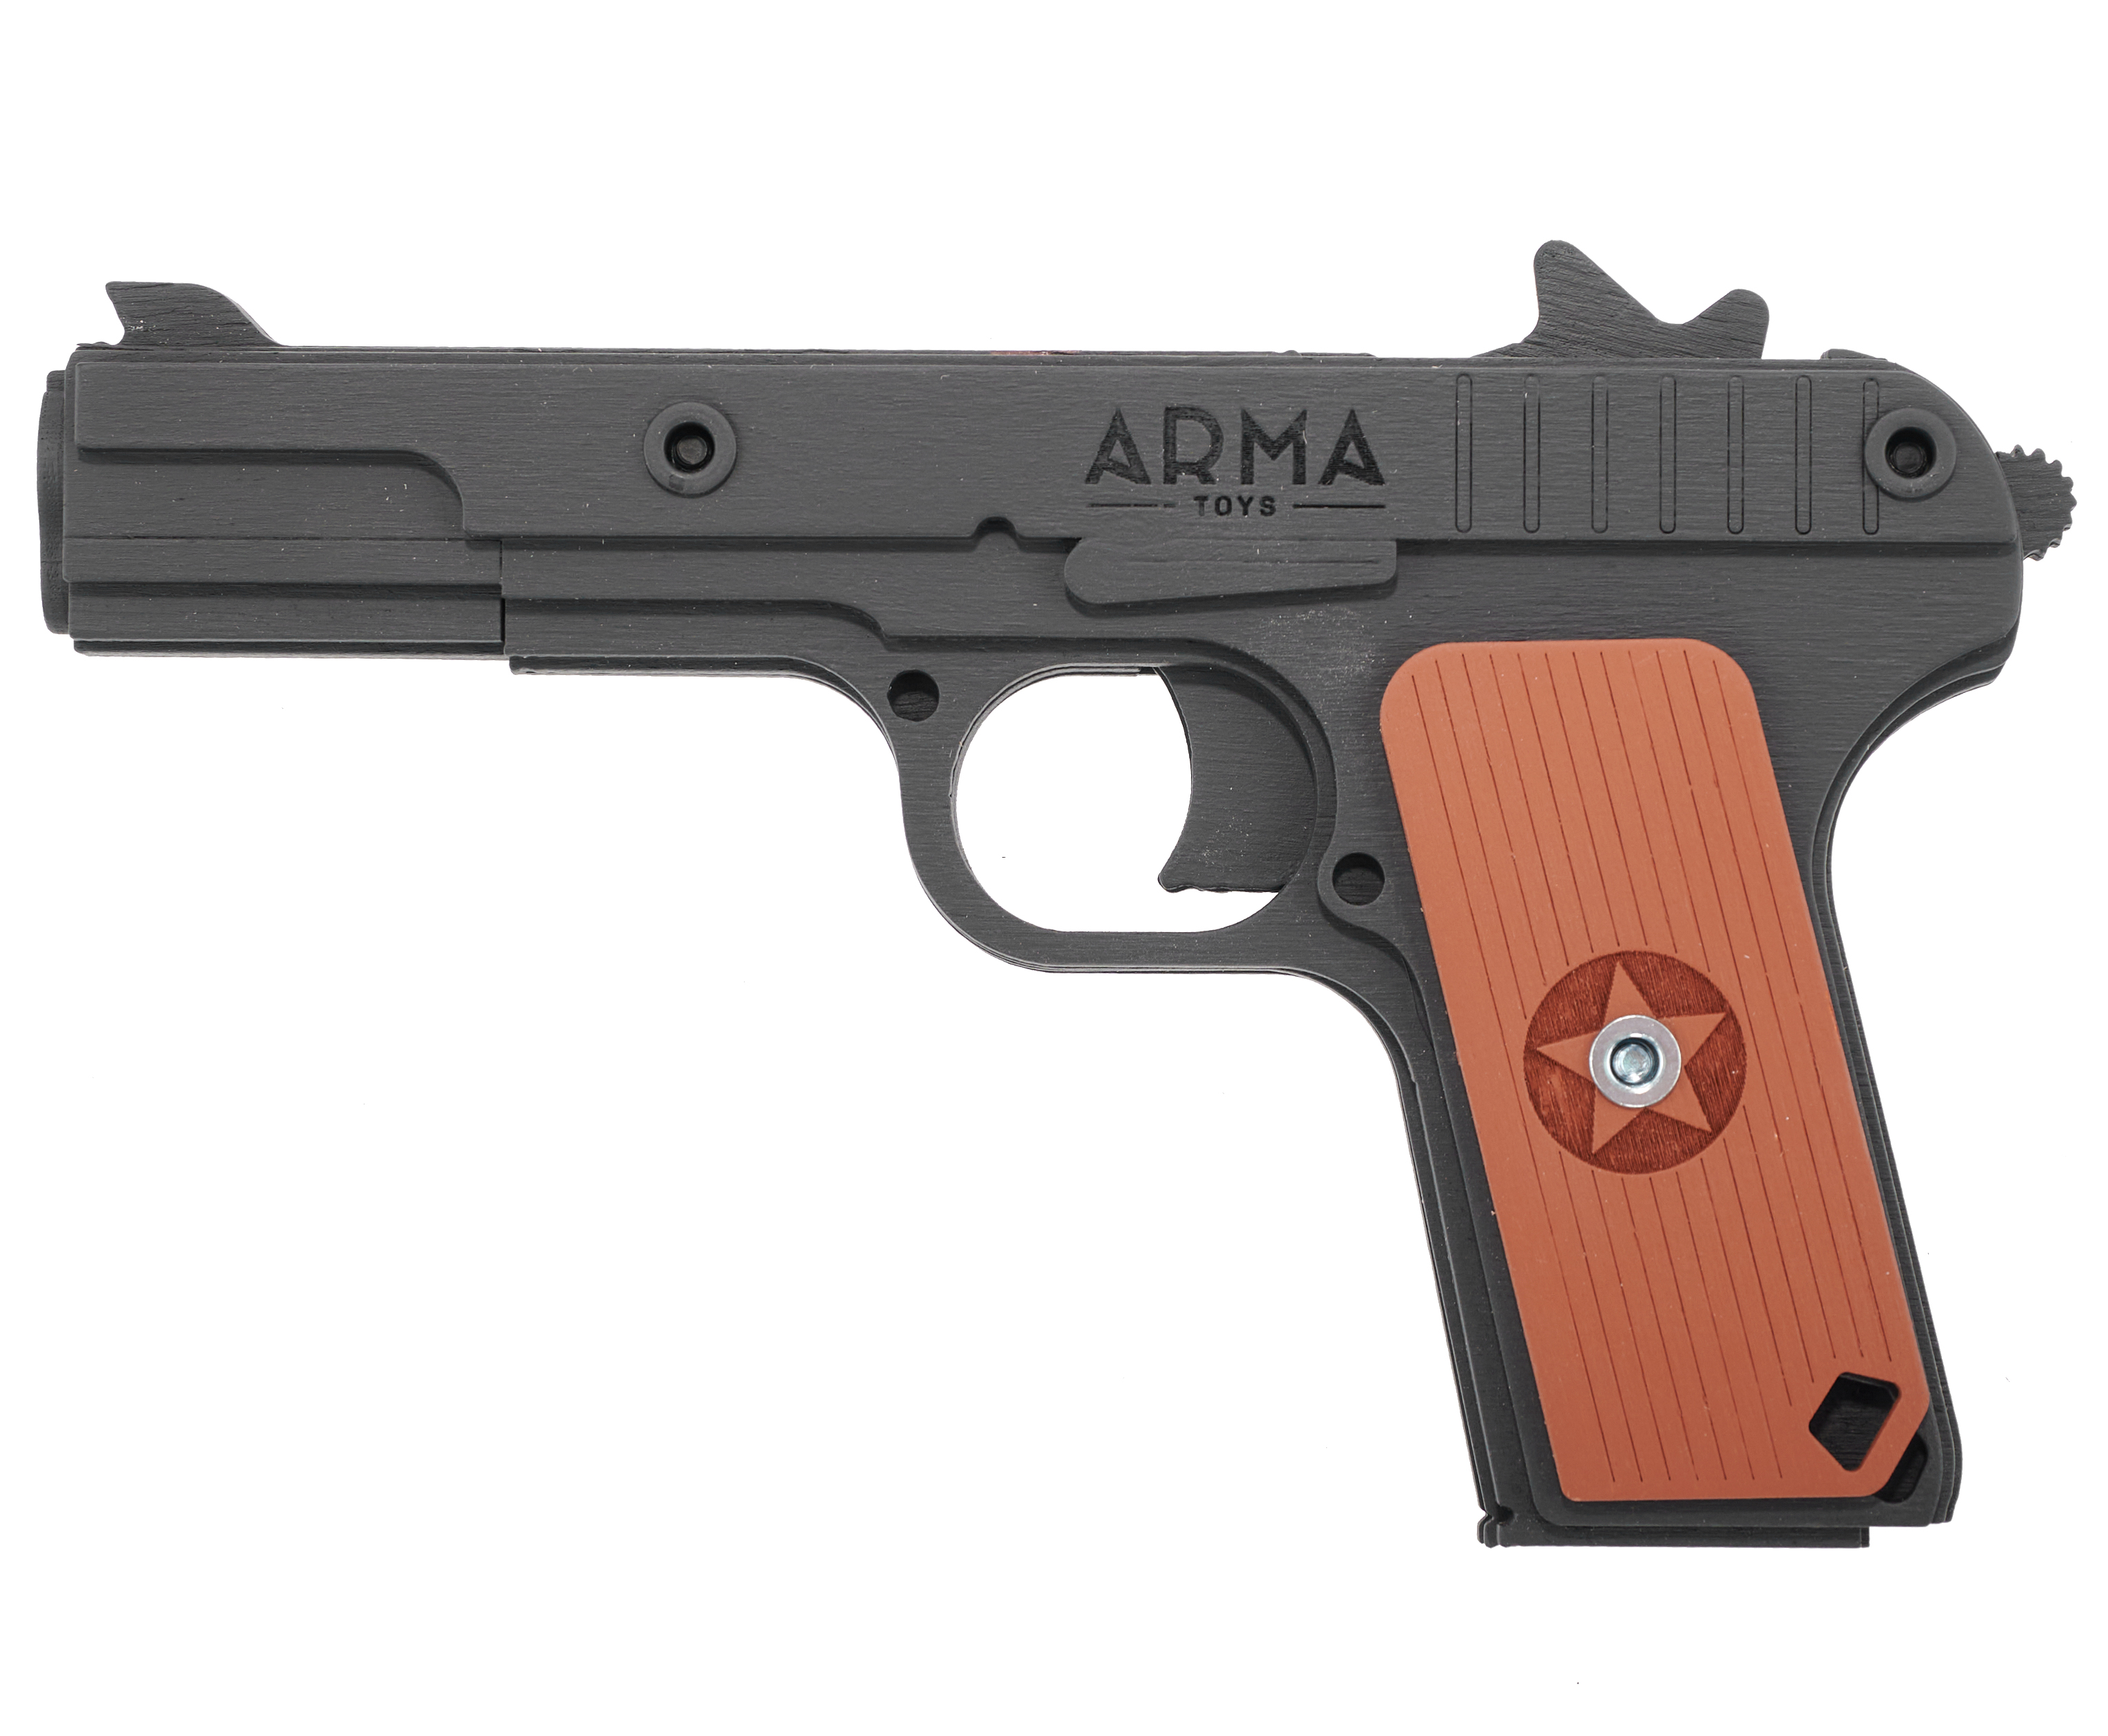 Резинкострел игрушечный Arma toys пистолет ТТ макет, Тульский Токарев, AT019k, окрашенный резинкострел arma toys пистолет тт компакт макет токарев atl002